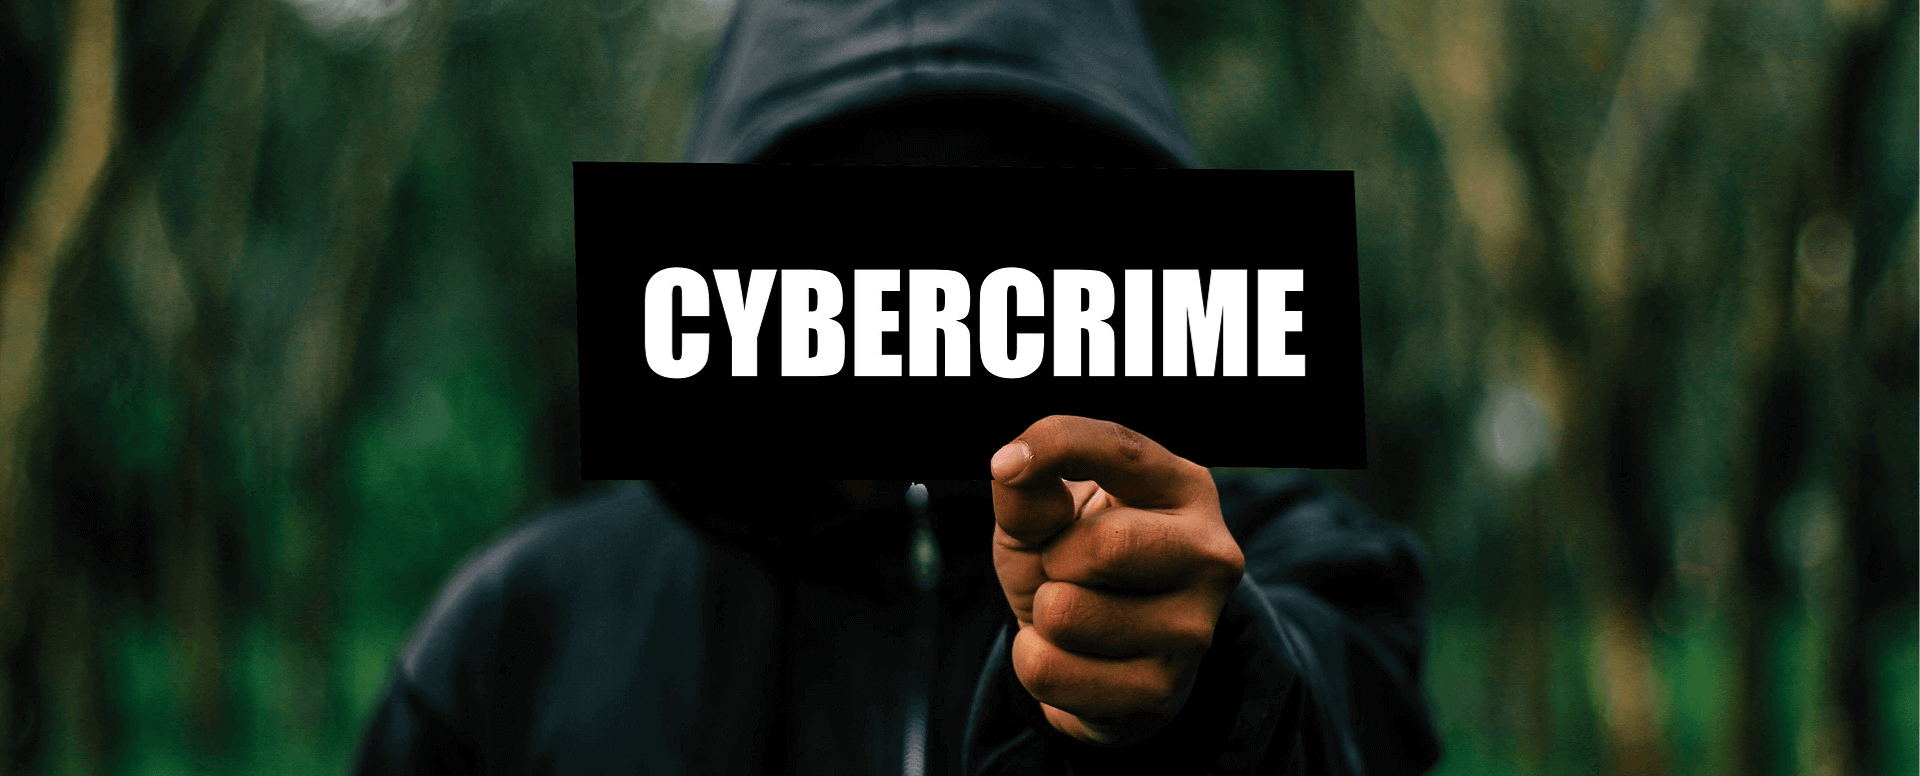 kibernetički kriminal